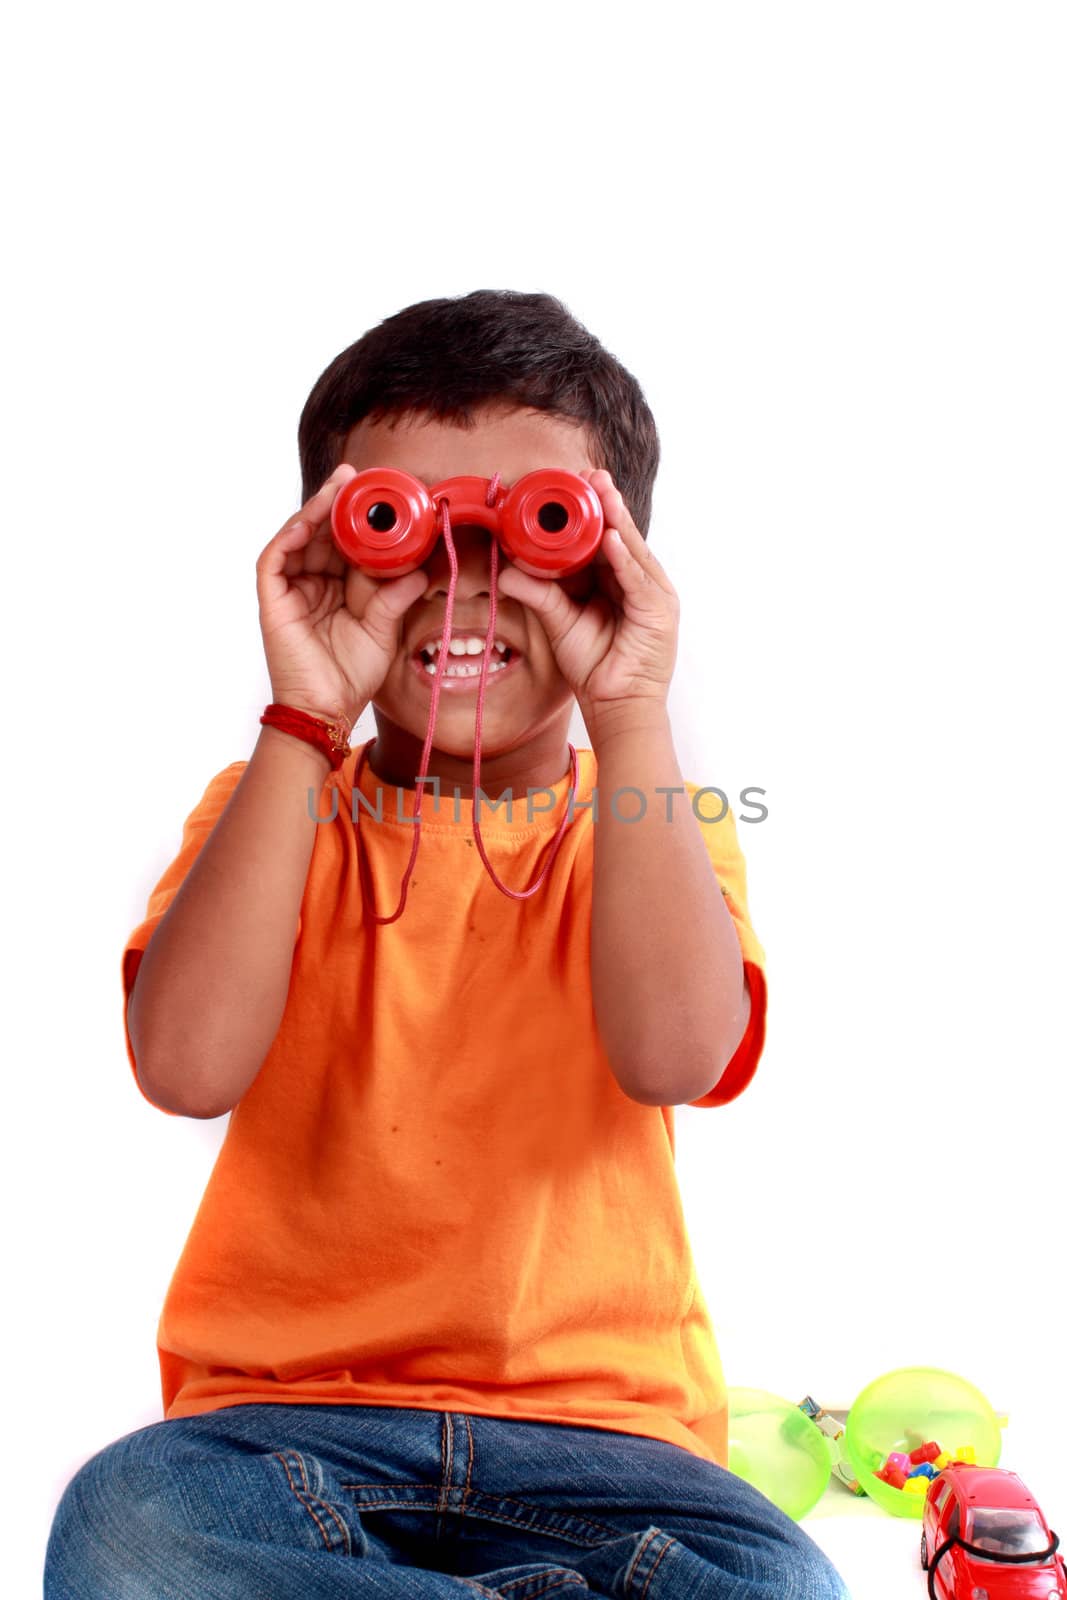 A cute Indian kid looking through red binoculars.